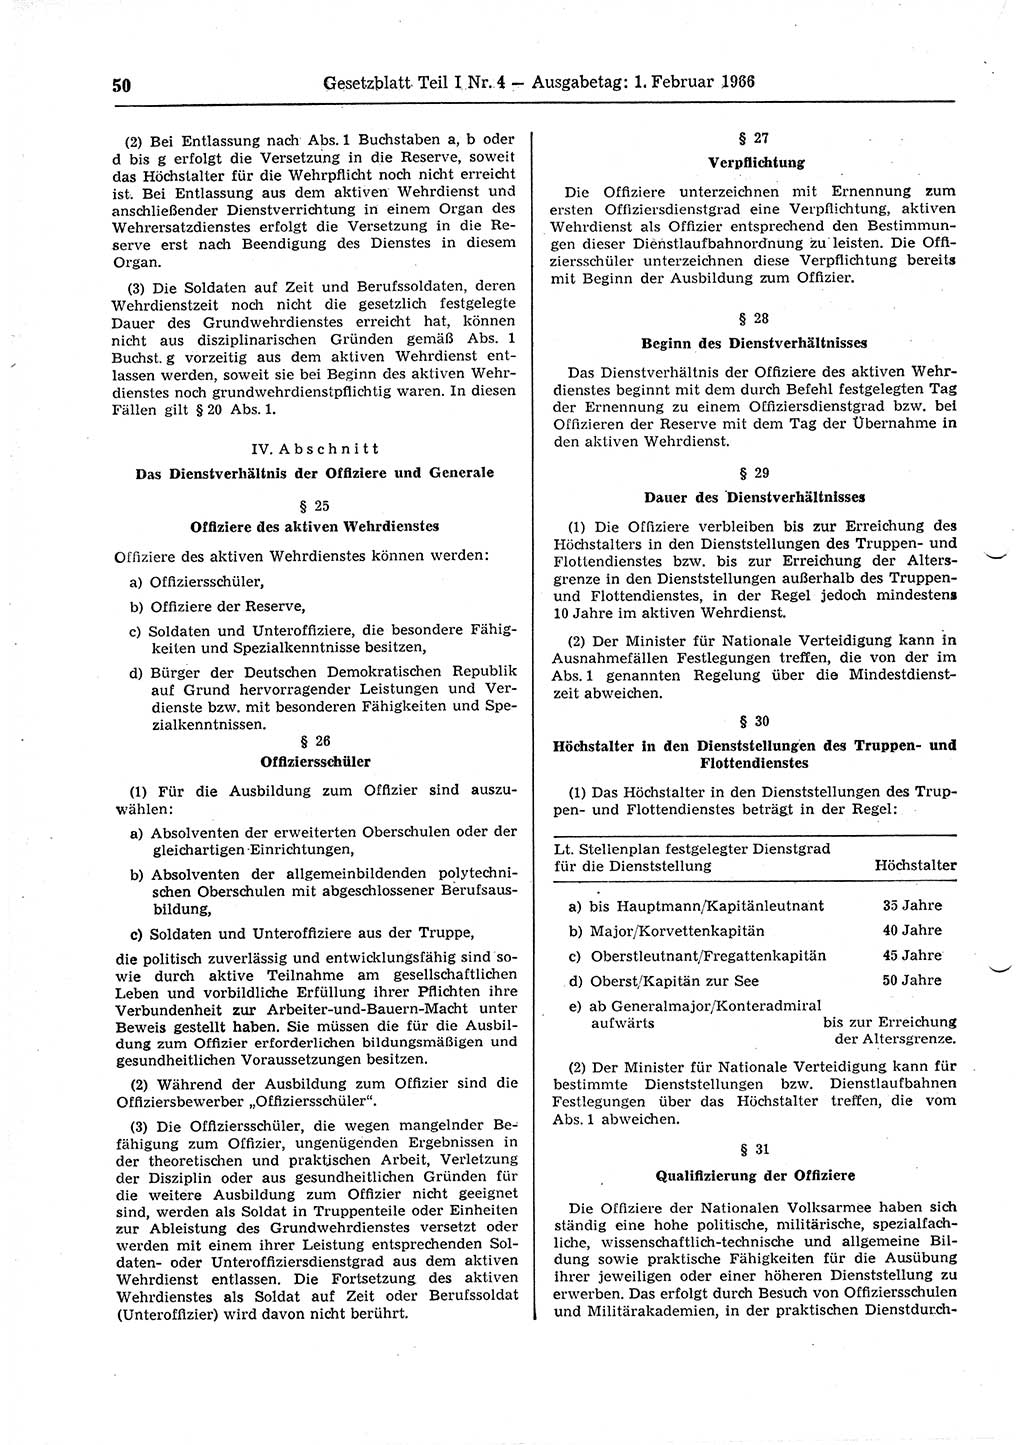 Gesetzblatt (GBl.) der Deutschen Demokratischen Republik (DDR) Teil Ⅰ 1966, Seite 50 (GBl. DDR Ⅰ 1966, S. 50)